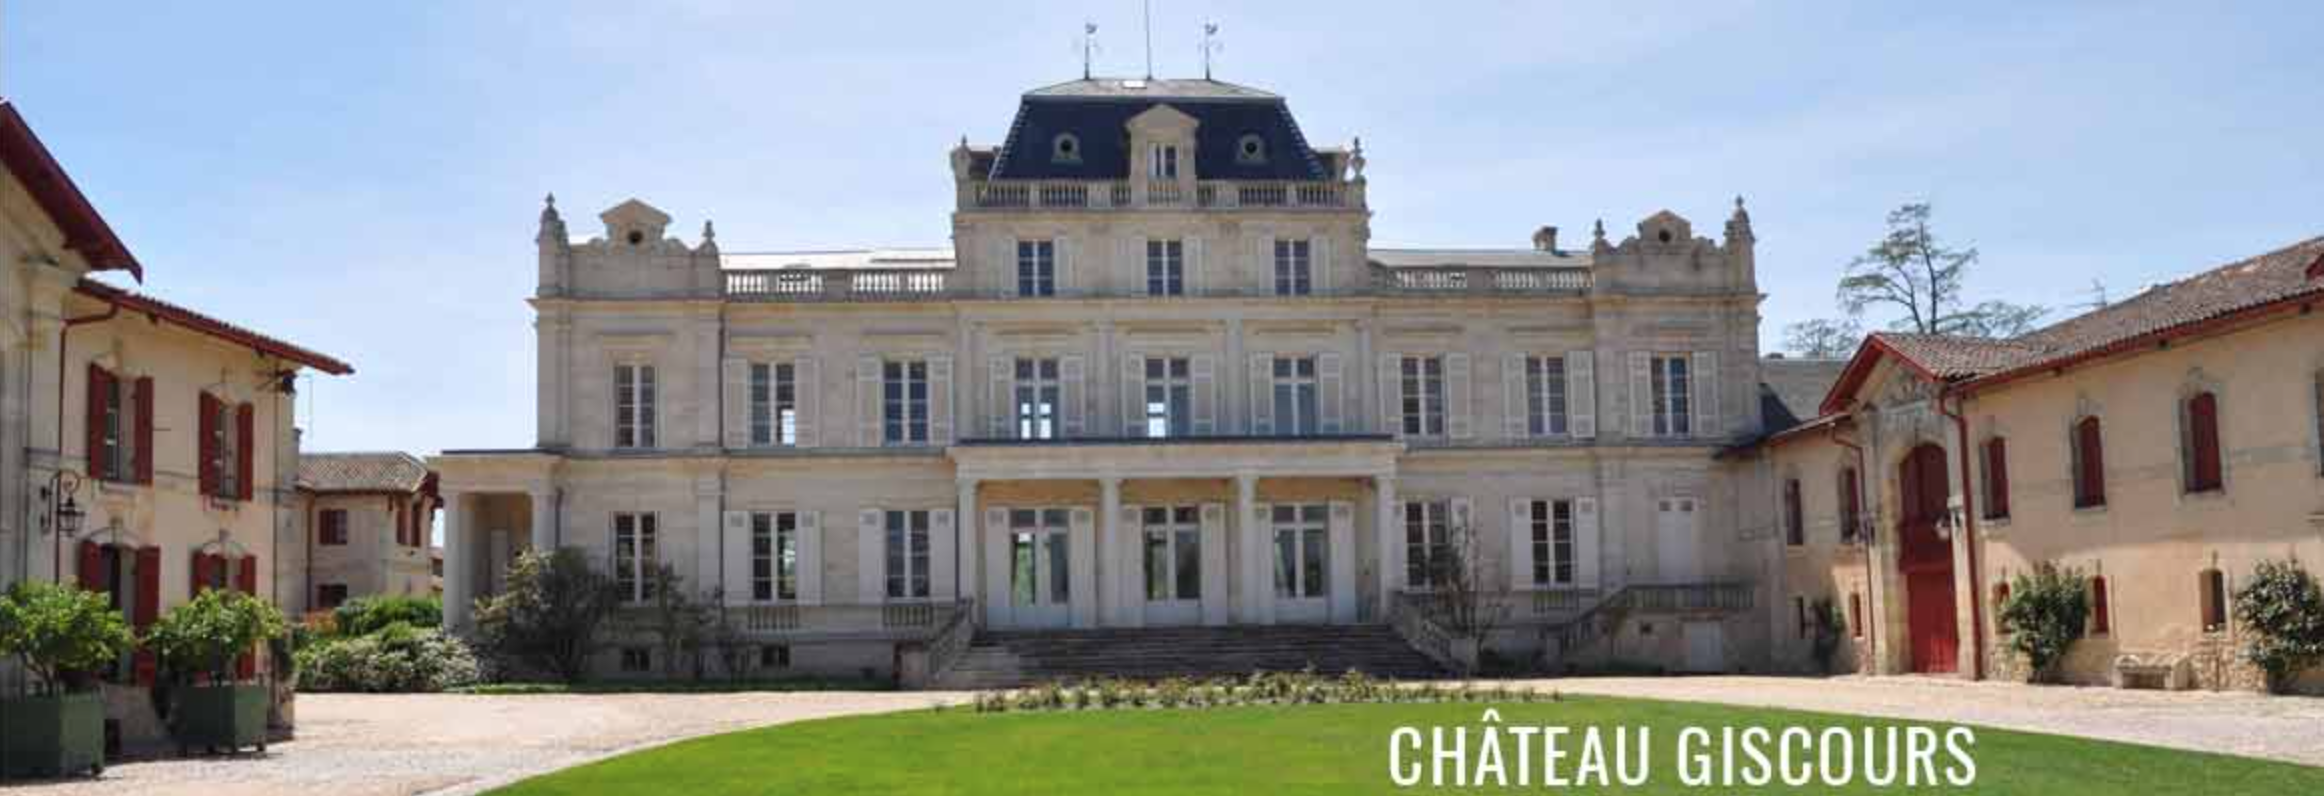 Wedding venues in Bordeaux: Château de Giscours